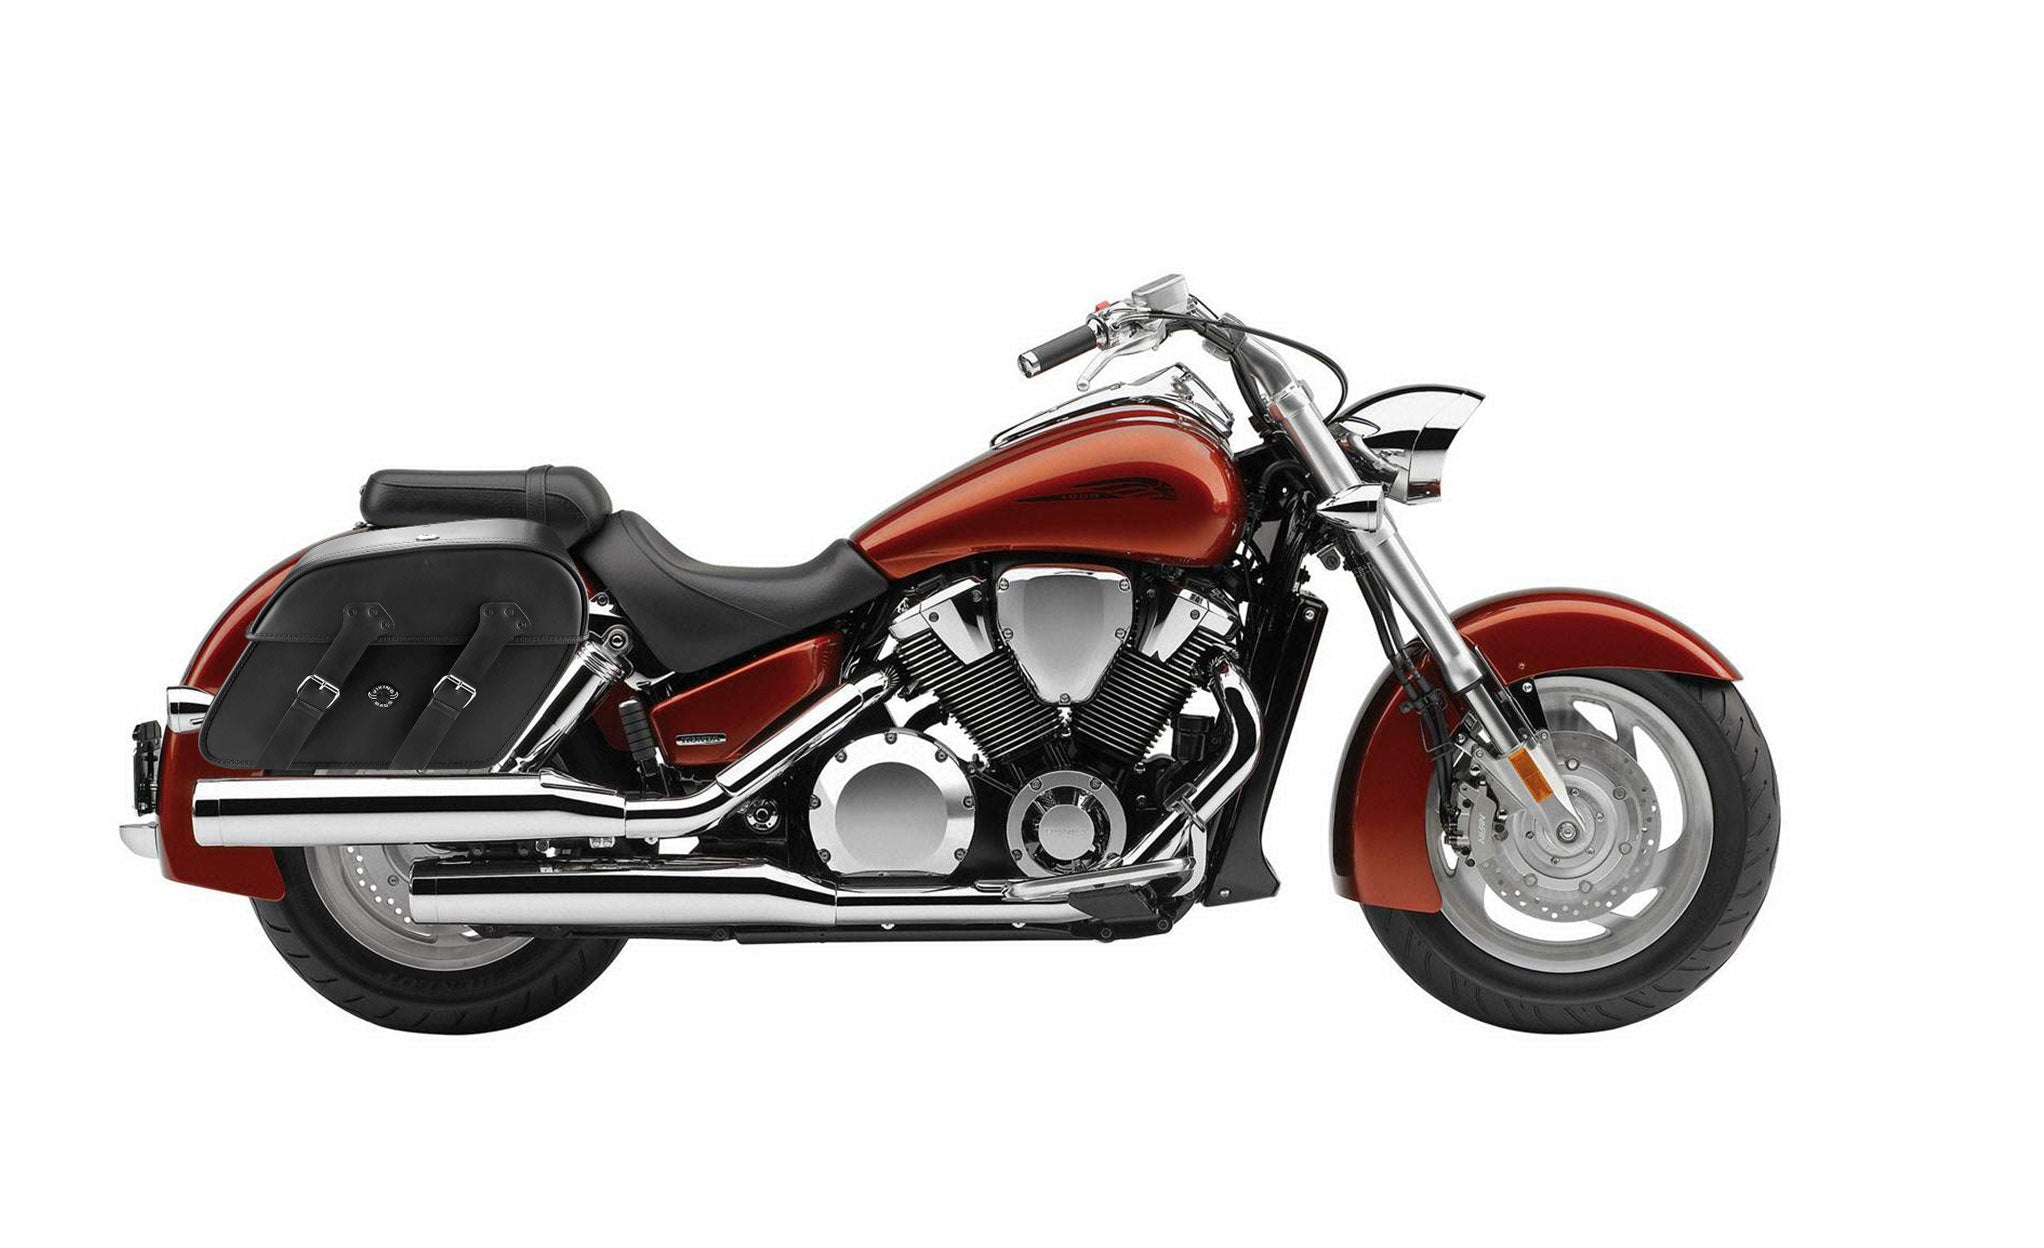 Viking Raven Extra Large Honda Vtx 1800 N Leather Motorcycle Saddlebags on Bike Photo @expand